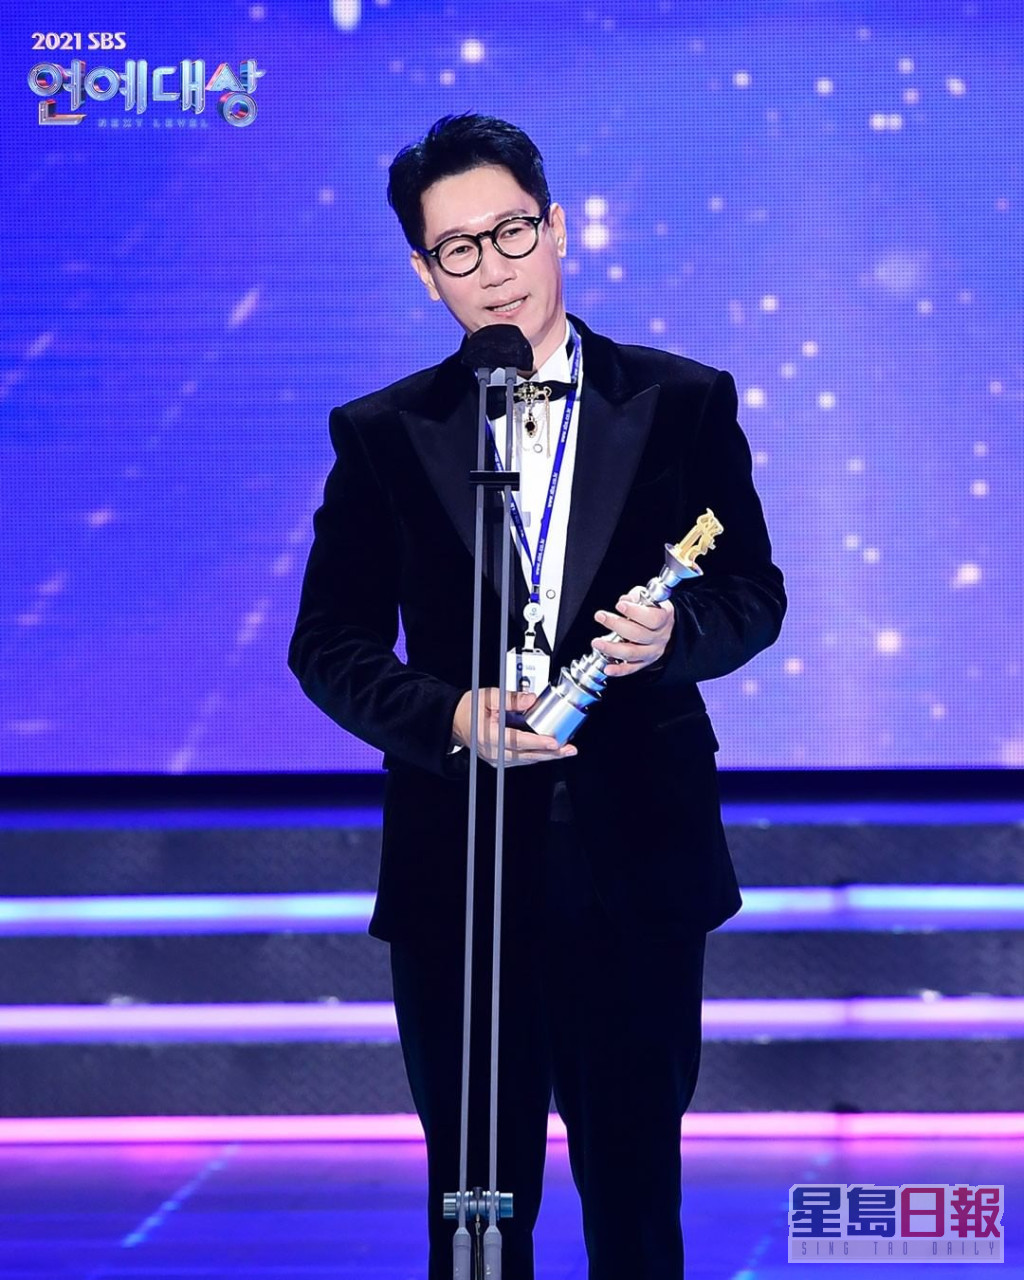 池錫辰另獲「SBS名譽社員獎」。